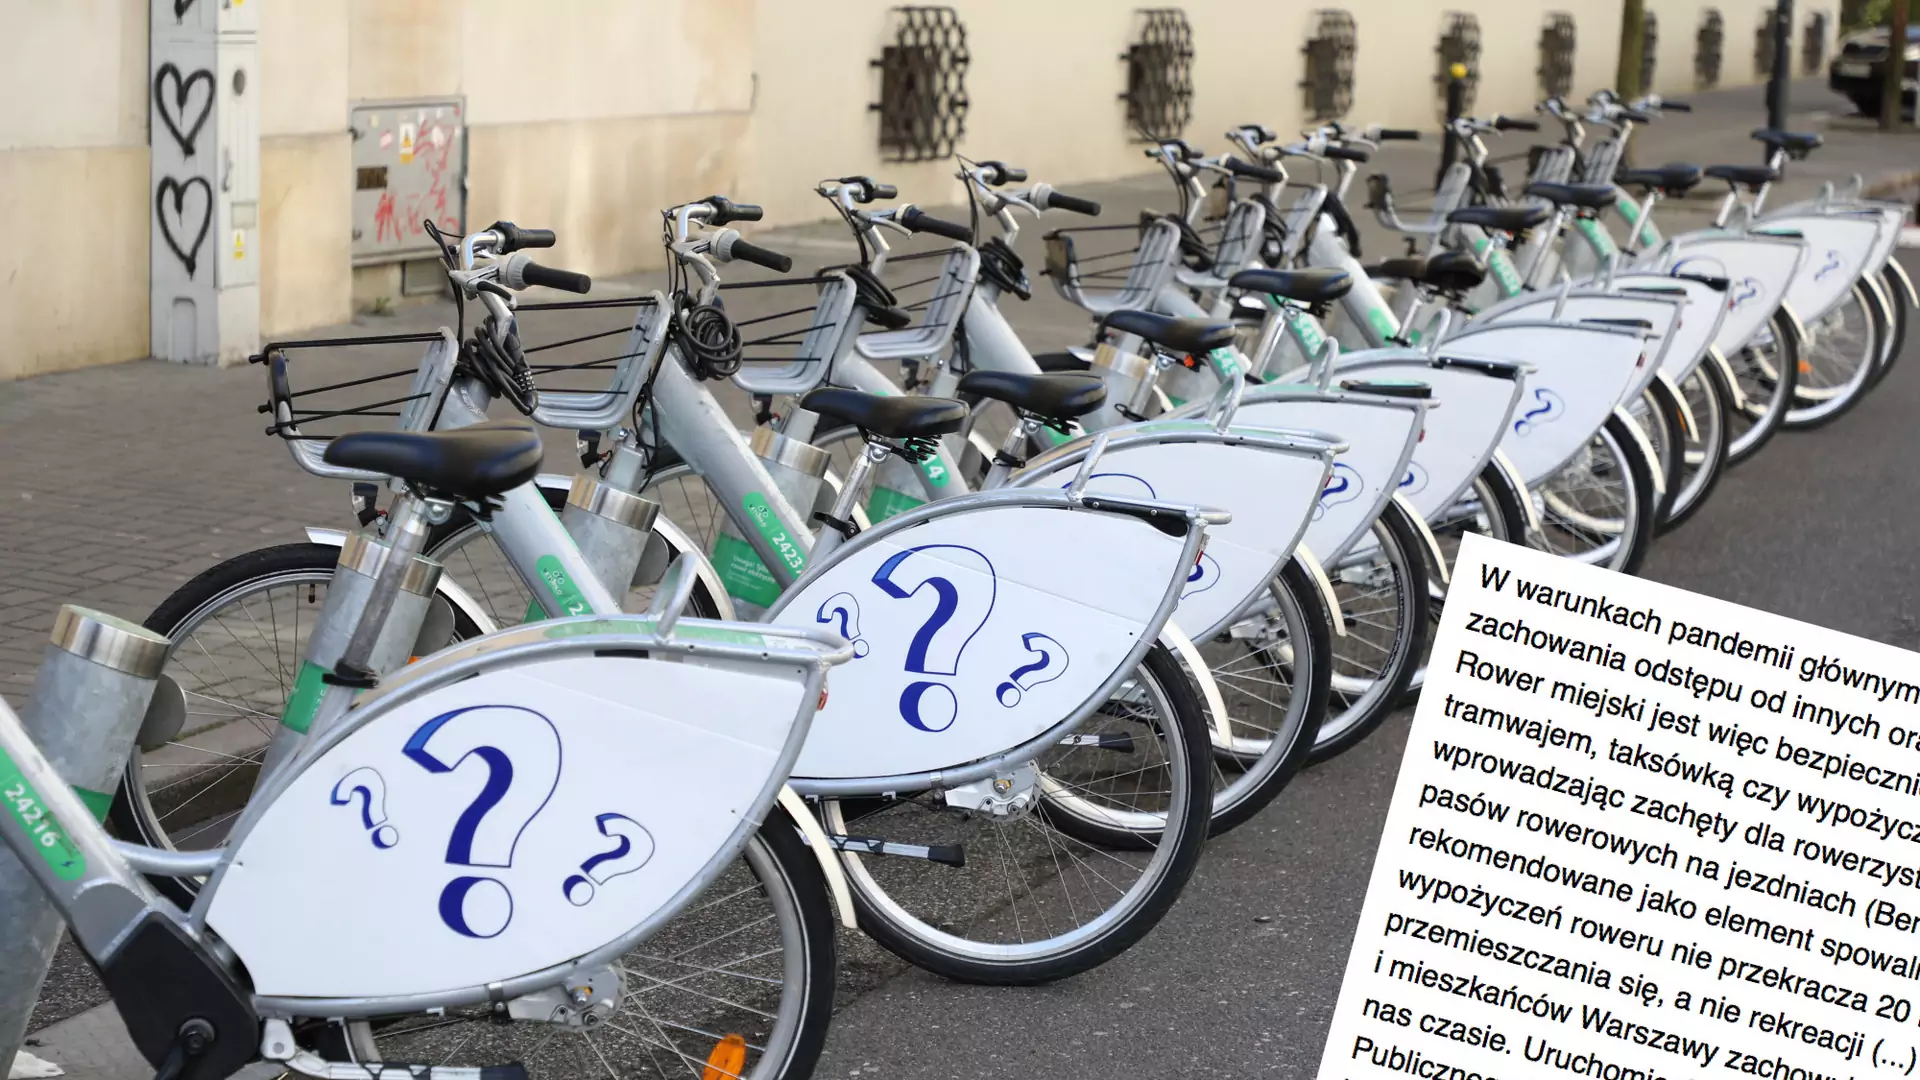 Prezydent stolicy do premiera: rower miejski jest bezpieczną alternatywą